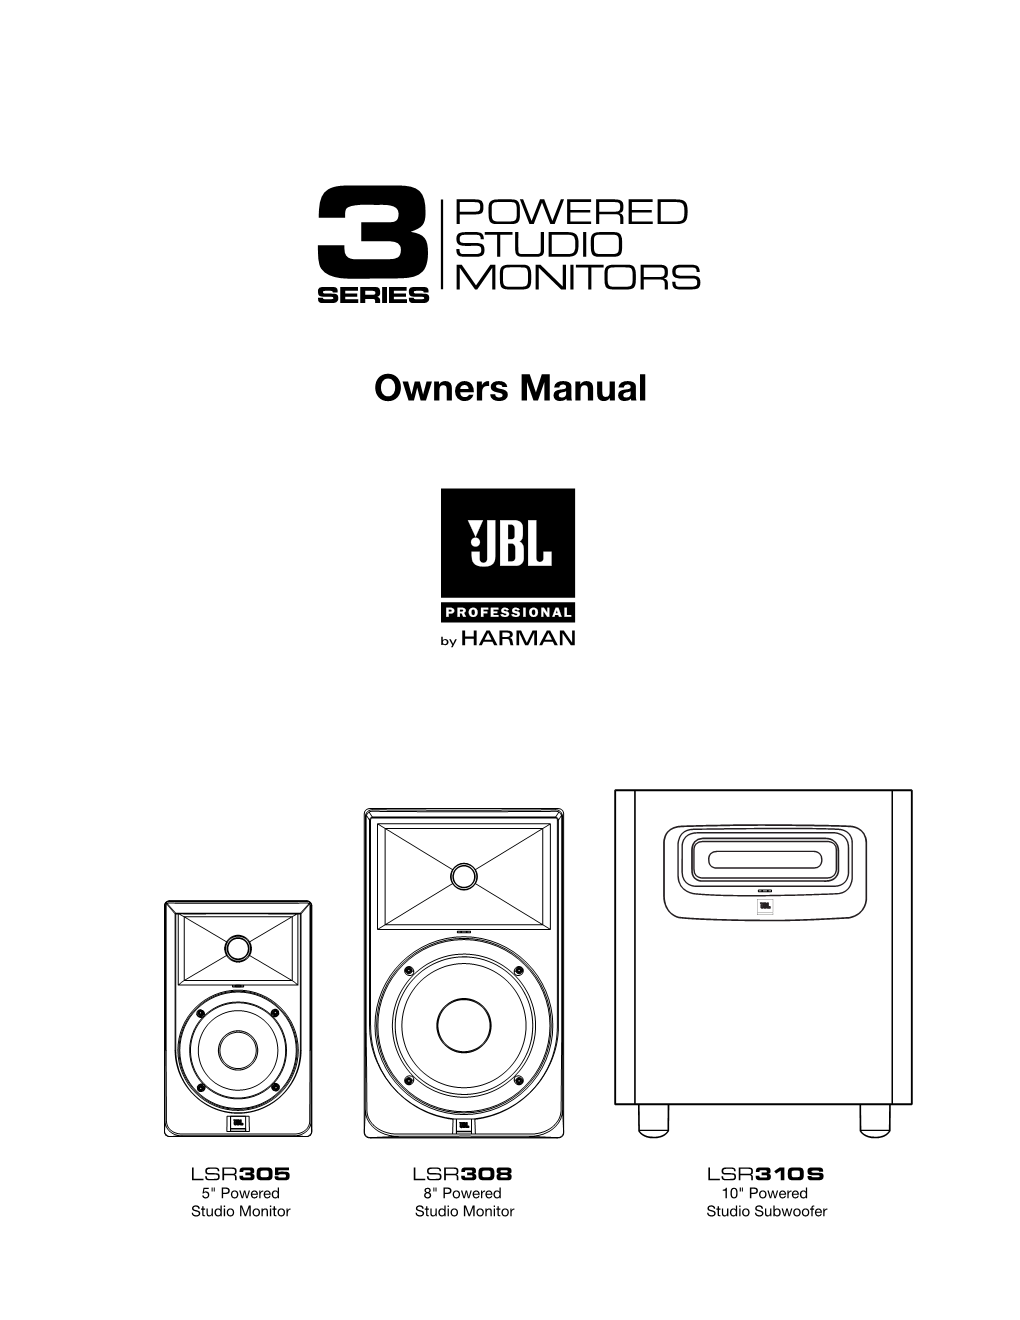 3 Series Owner's Manual